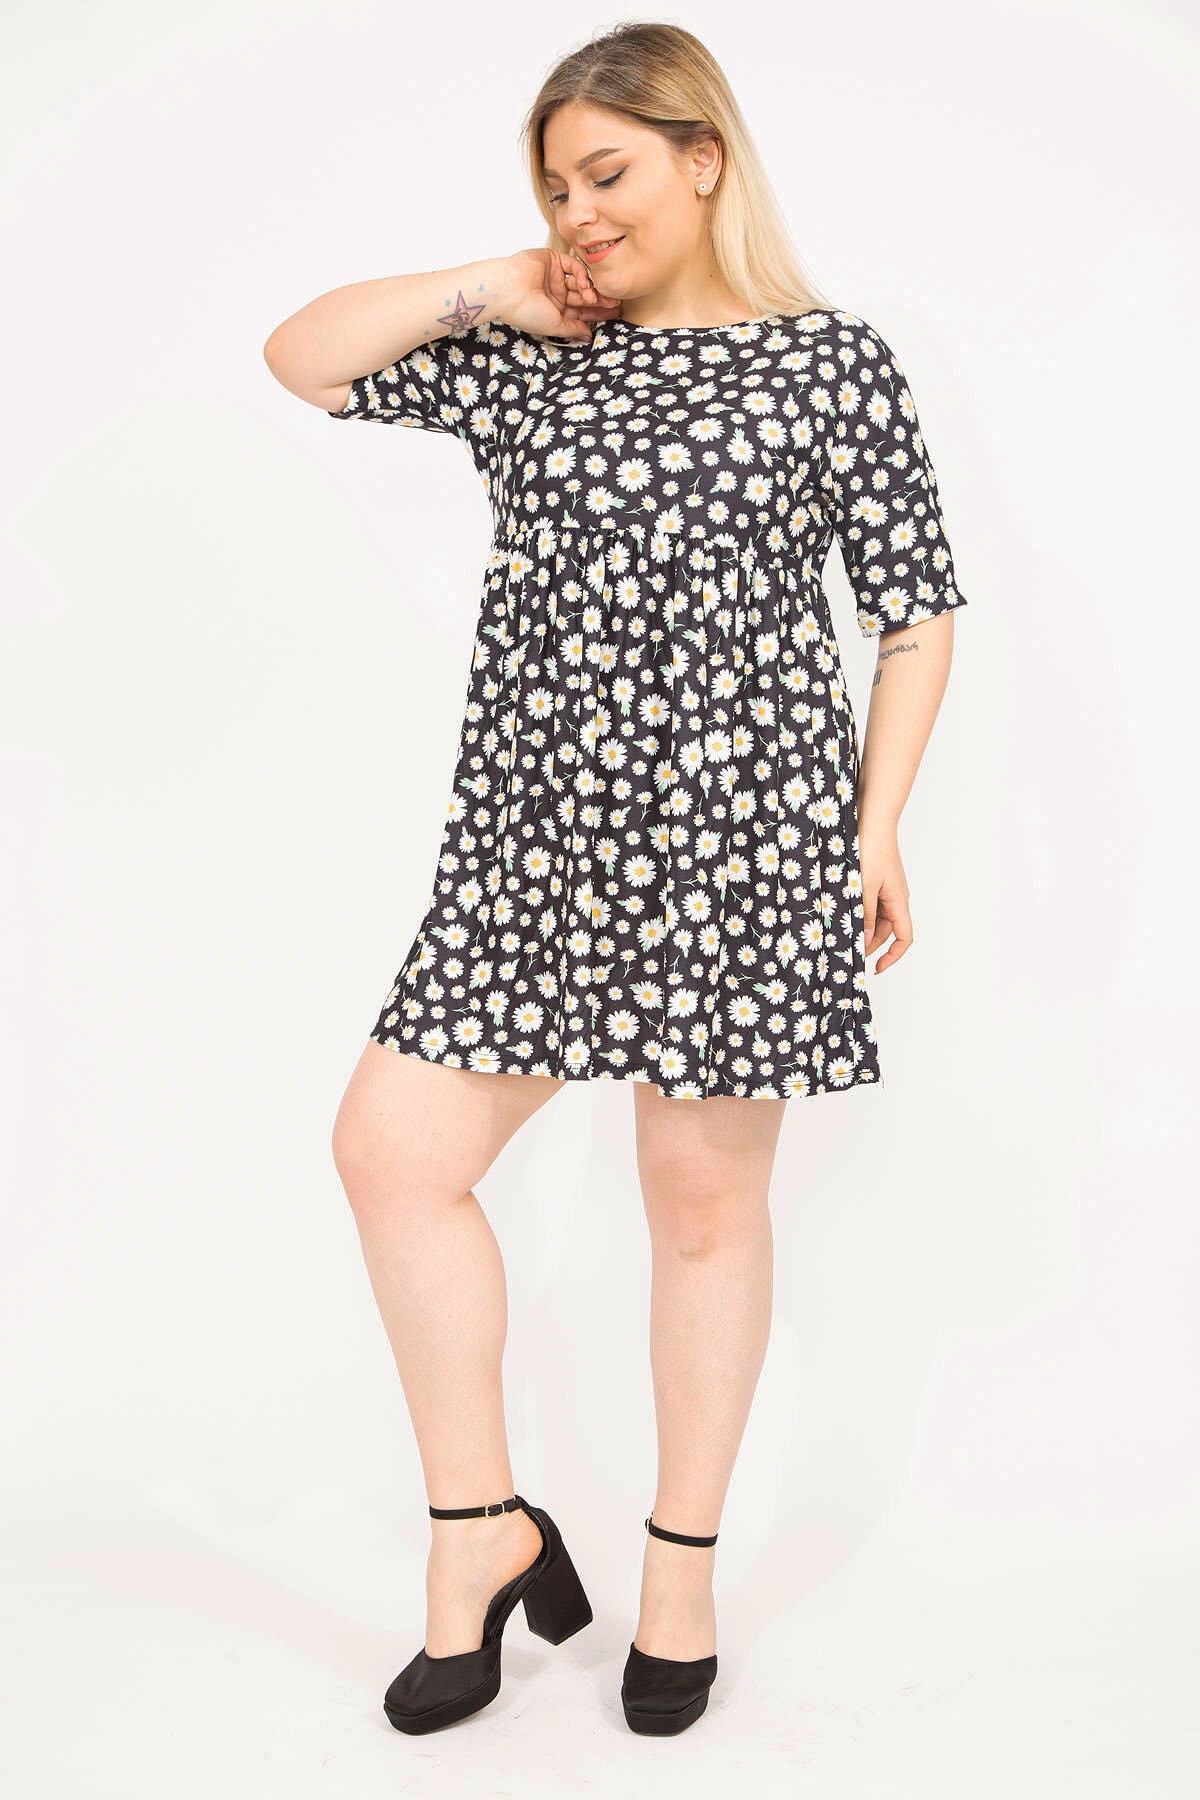 Levně Şans Women's Colorful Plus Size Elastic Waist, Patterned Tunic Dress